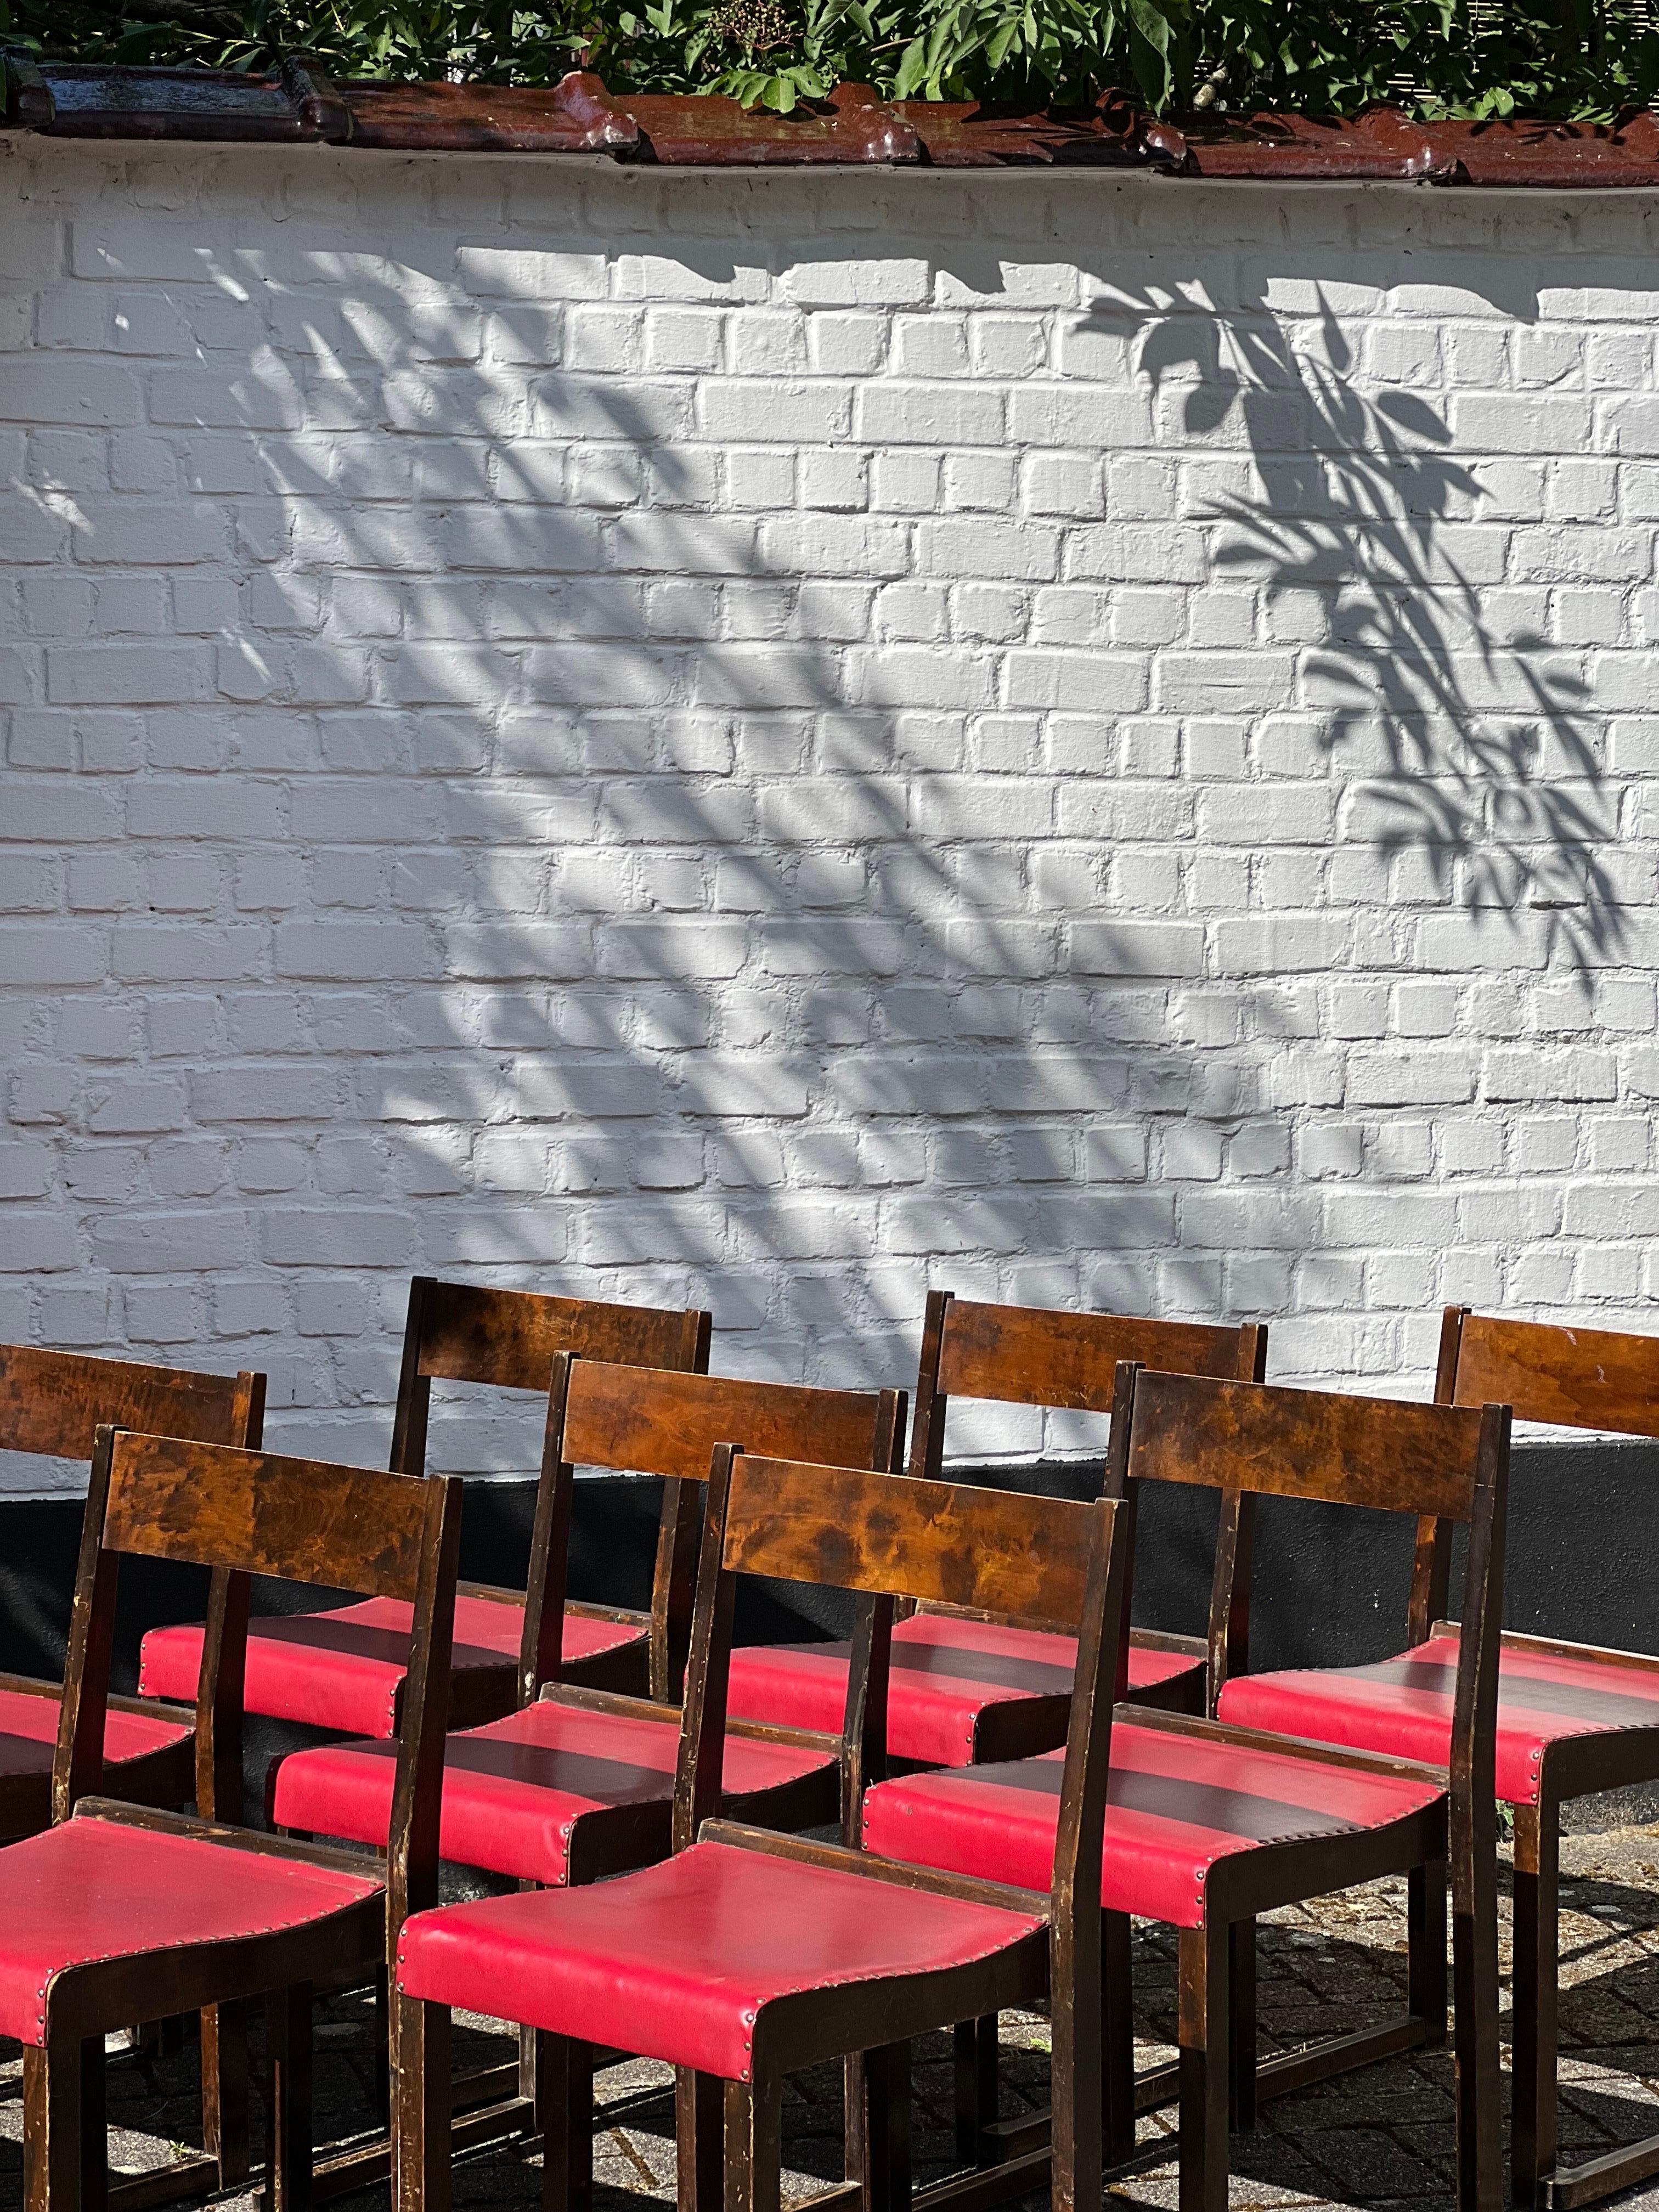 Lot de 10 chaises empilables minimales et élégantes, légères et confortables, de l'architecte moderniste Sven Markelius. Conçu et réalisé pour l'orchestre du théâtre d'Helsingborg en Suède en 1931. Il s'agit de bouleau teinté en brun foncé avec